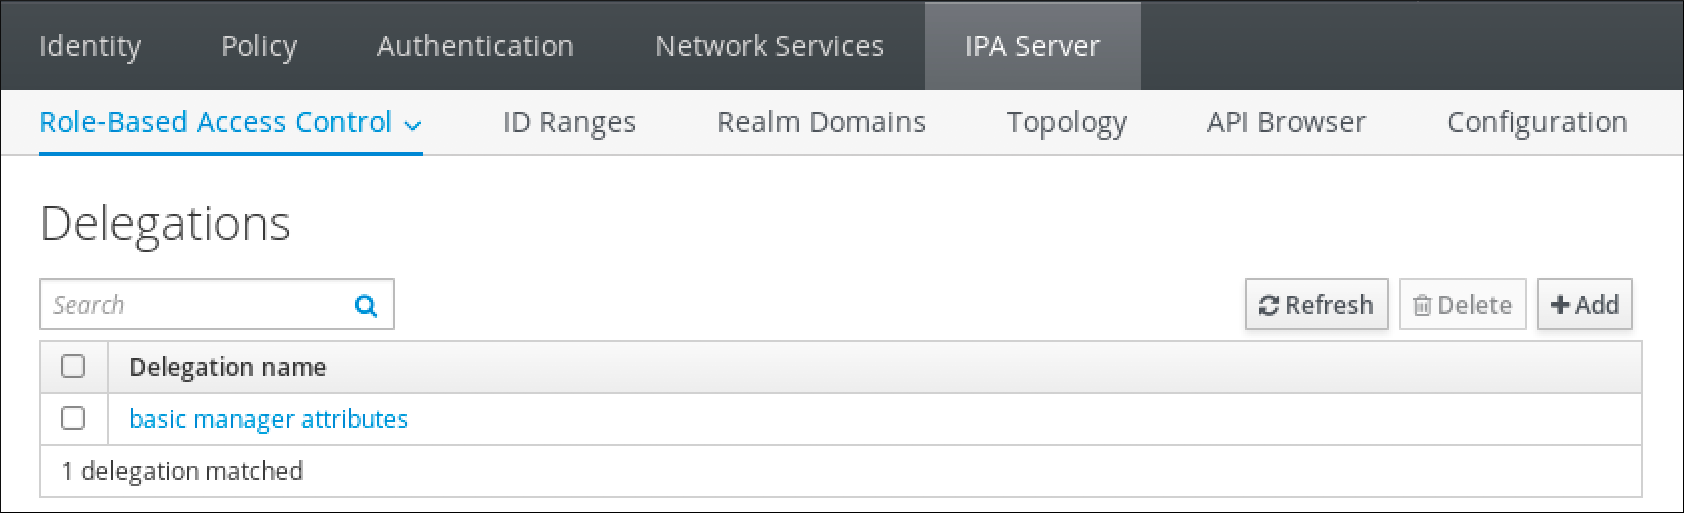 IdM Web UI のスクリーンショット。IPA Server タブの ロールベースのアクセス制御のサブページが表示されています。委譲のページには、基本的なマネージャー属性委譲名のエントリーを含むテーブルが表示されています。